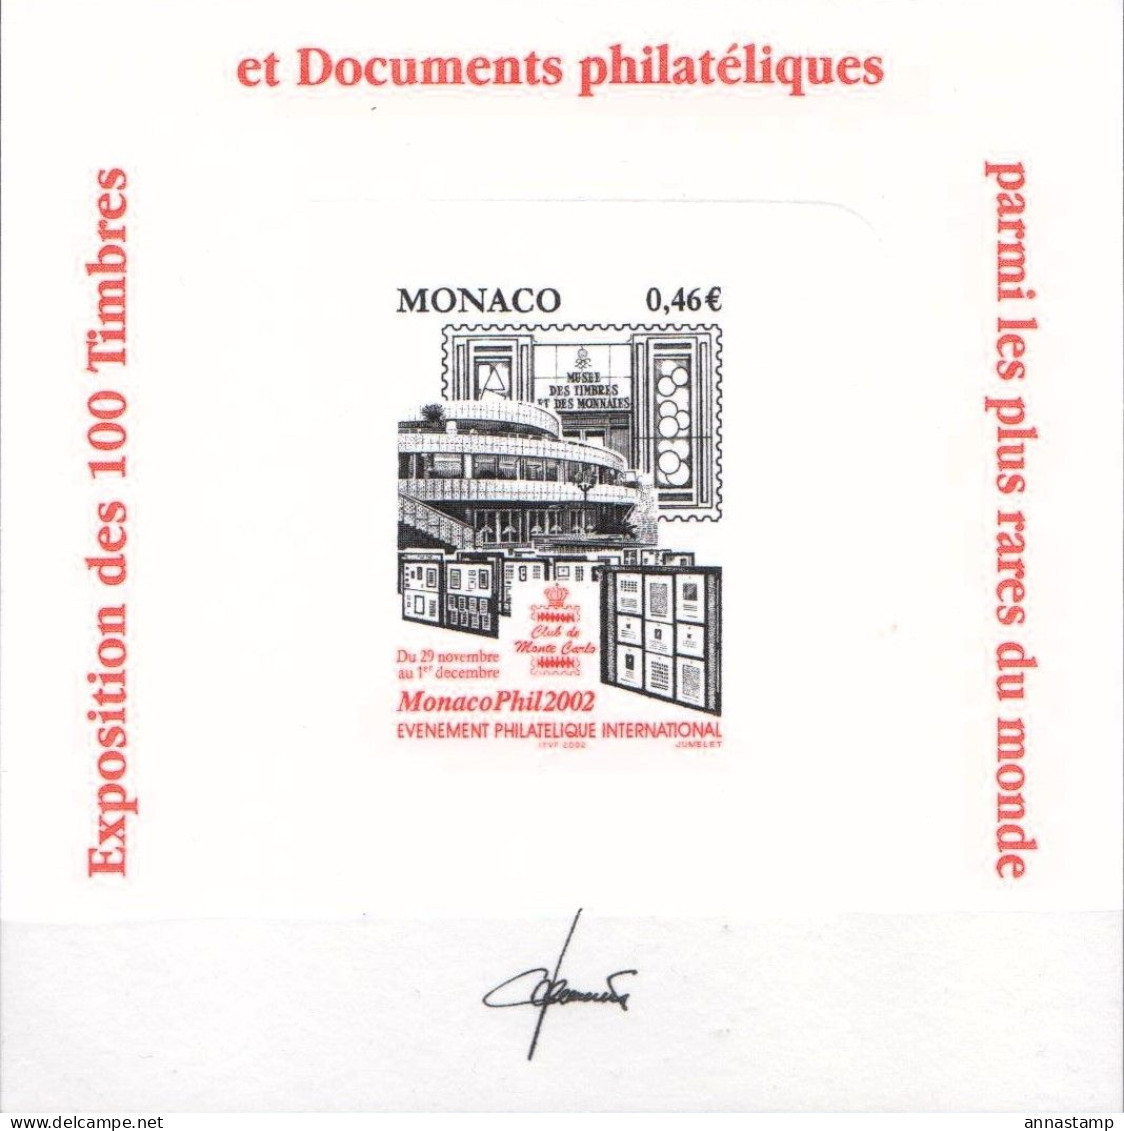 Monaco Cardbord Proof Issue For MonacoPhil 2002 - Philatelic Exhibitions